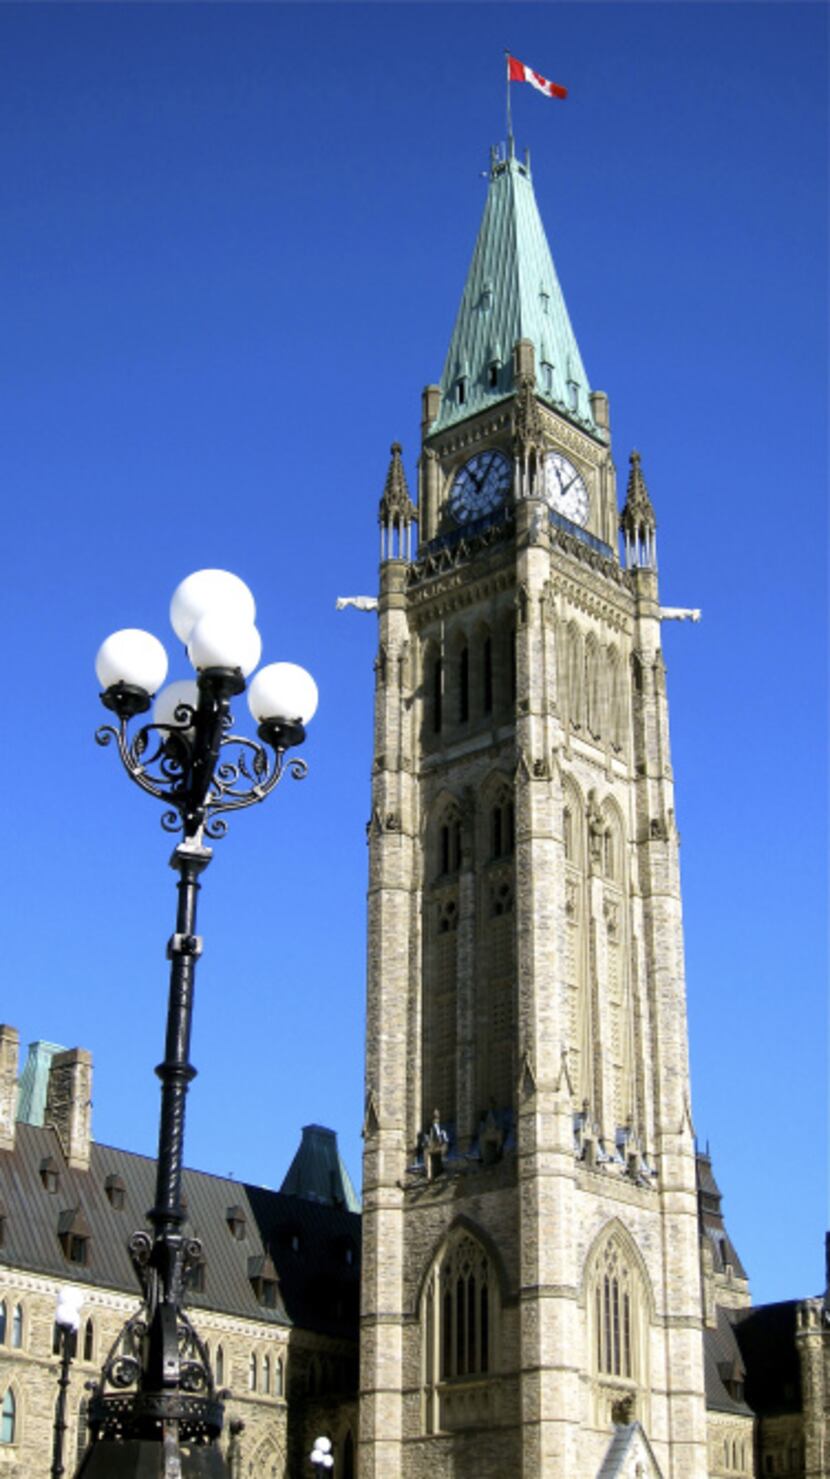 Parliament Hill in Ottawa's historic capital.